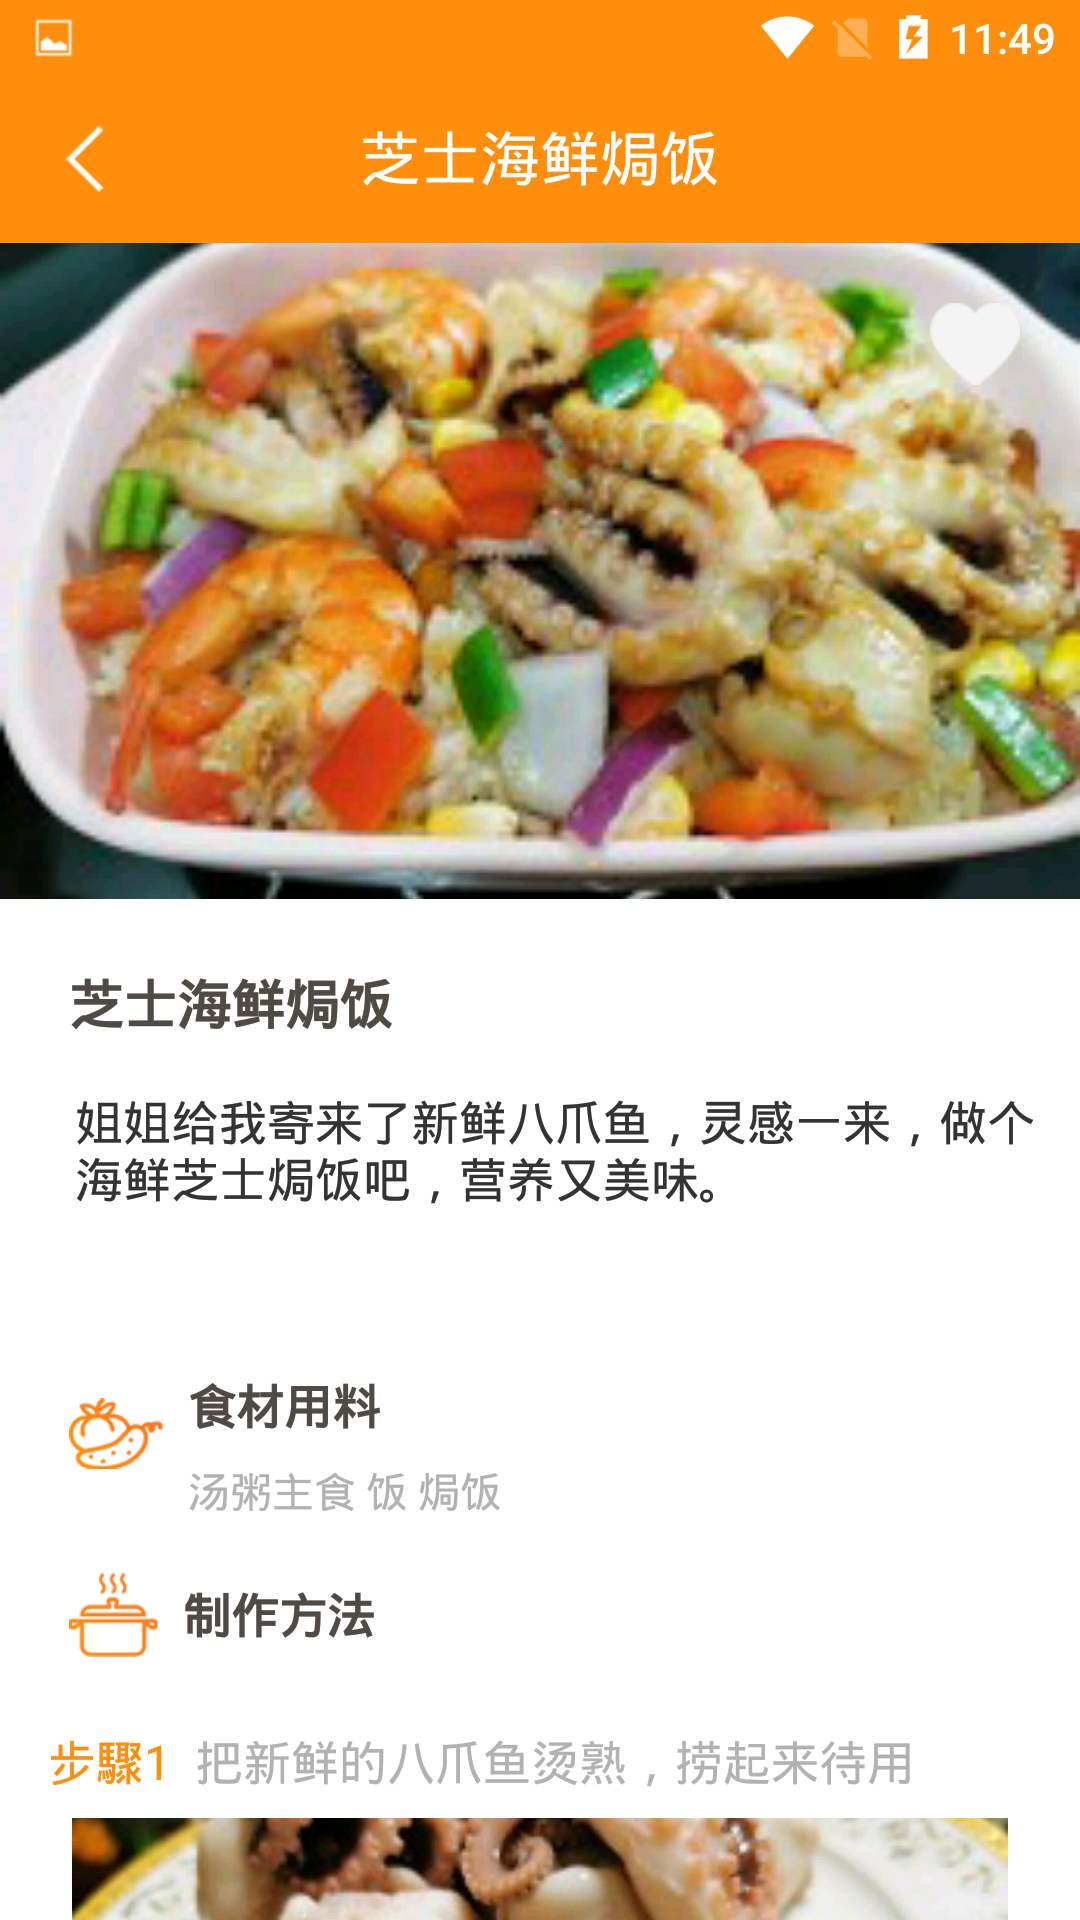 爱上厨房美食菜谱App下载 1.0.6 截图3